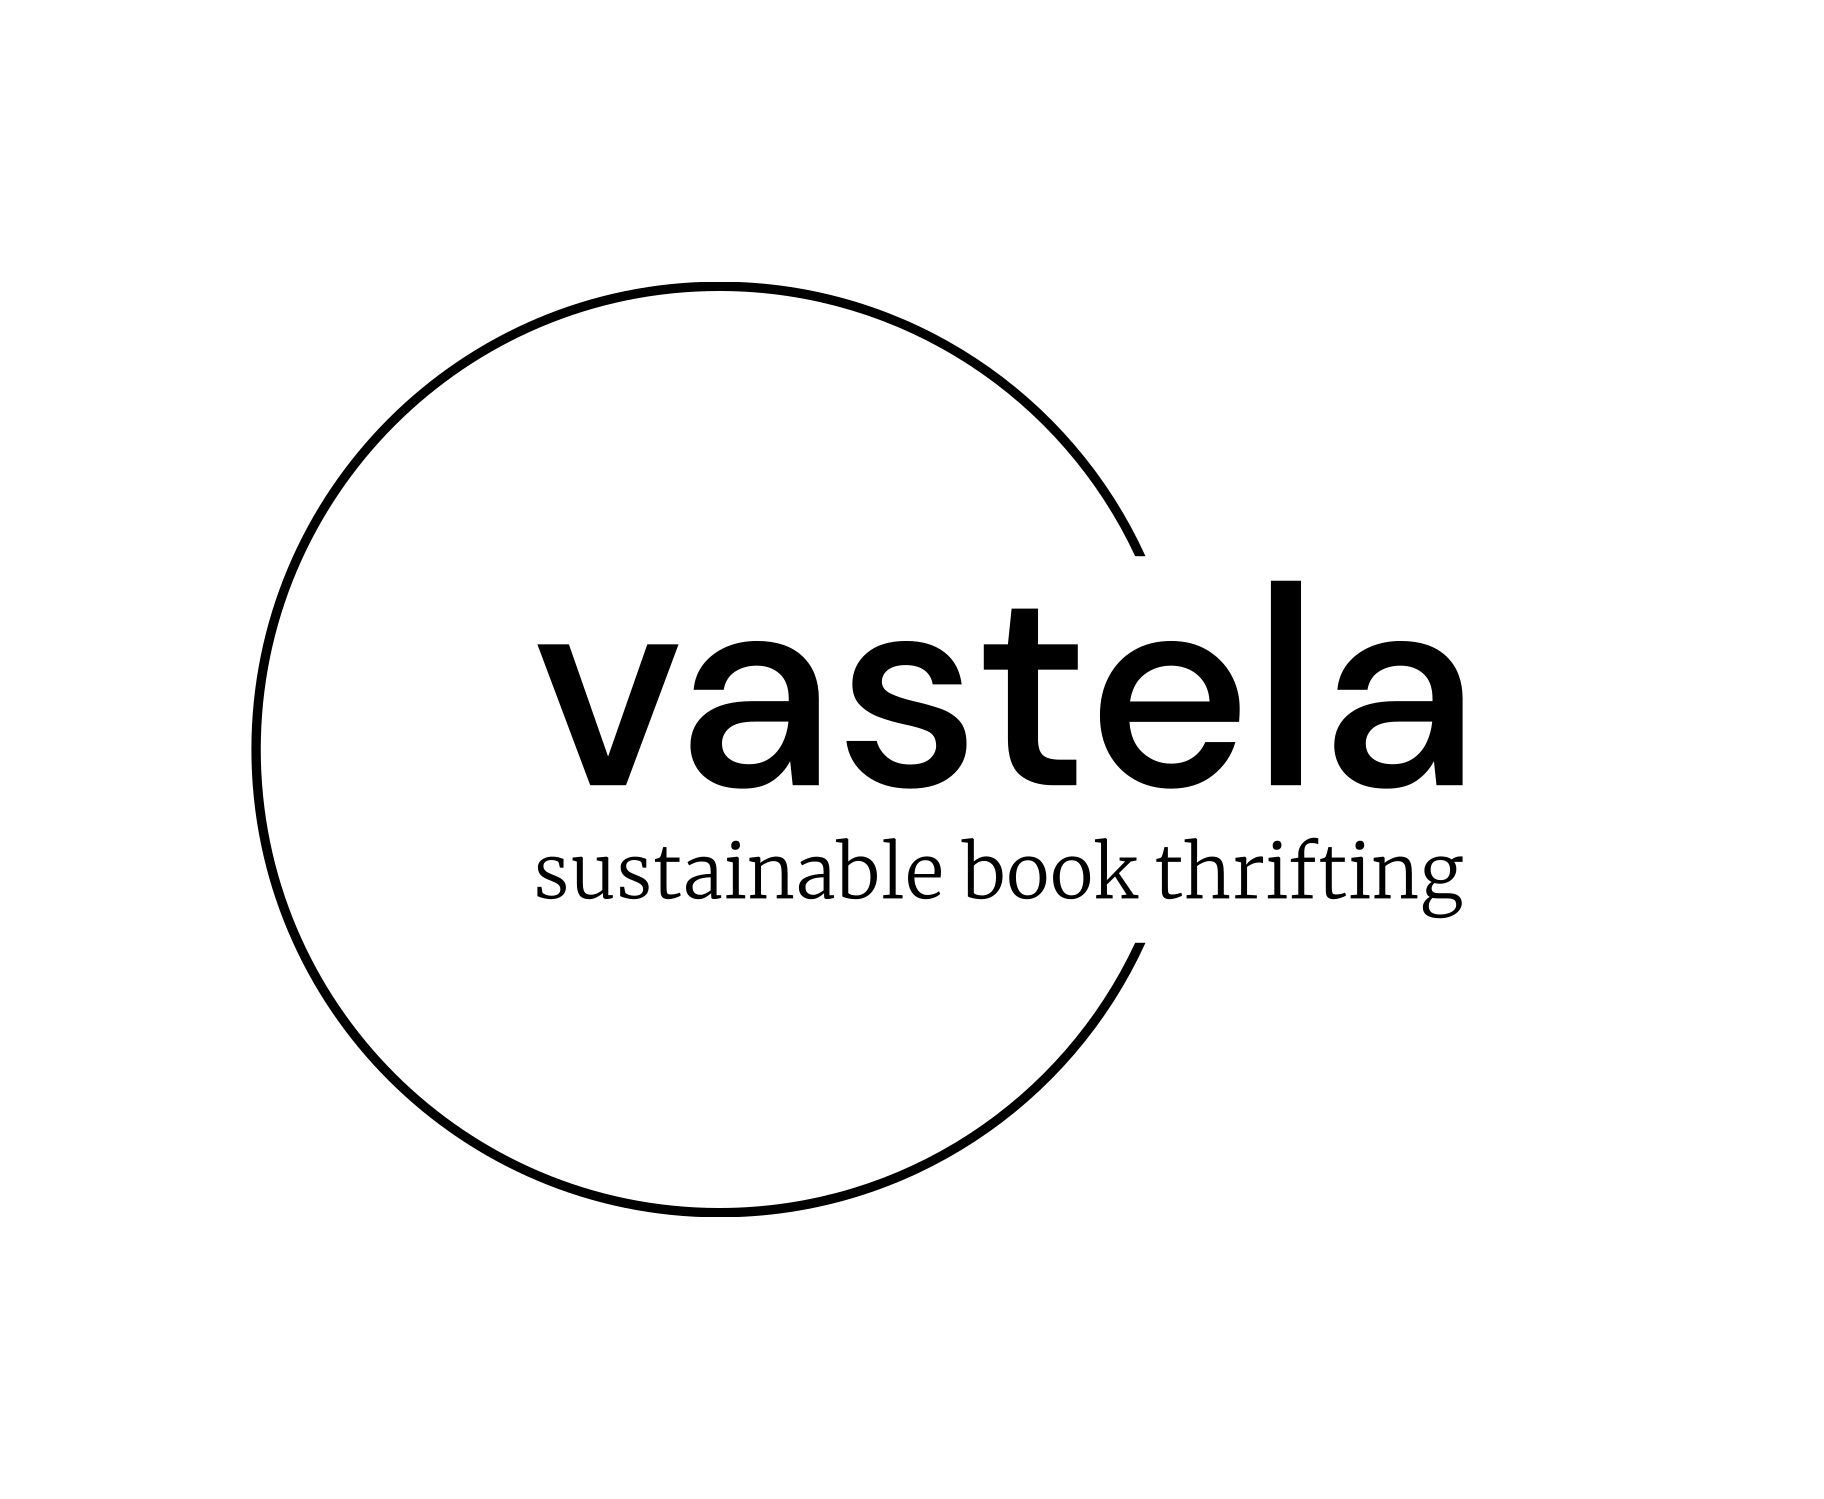 Vastela Books